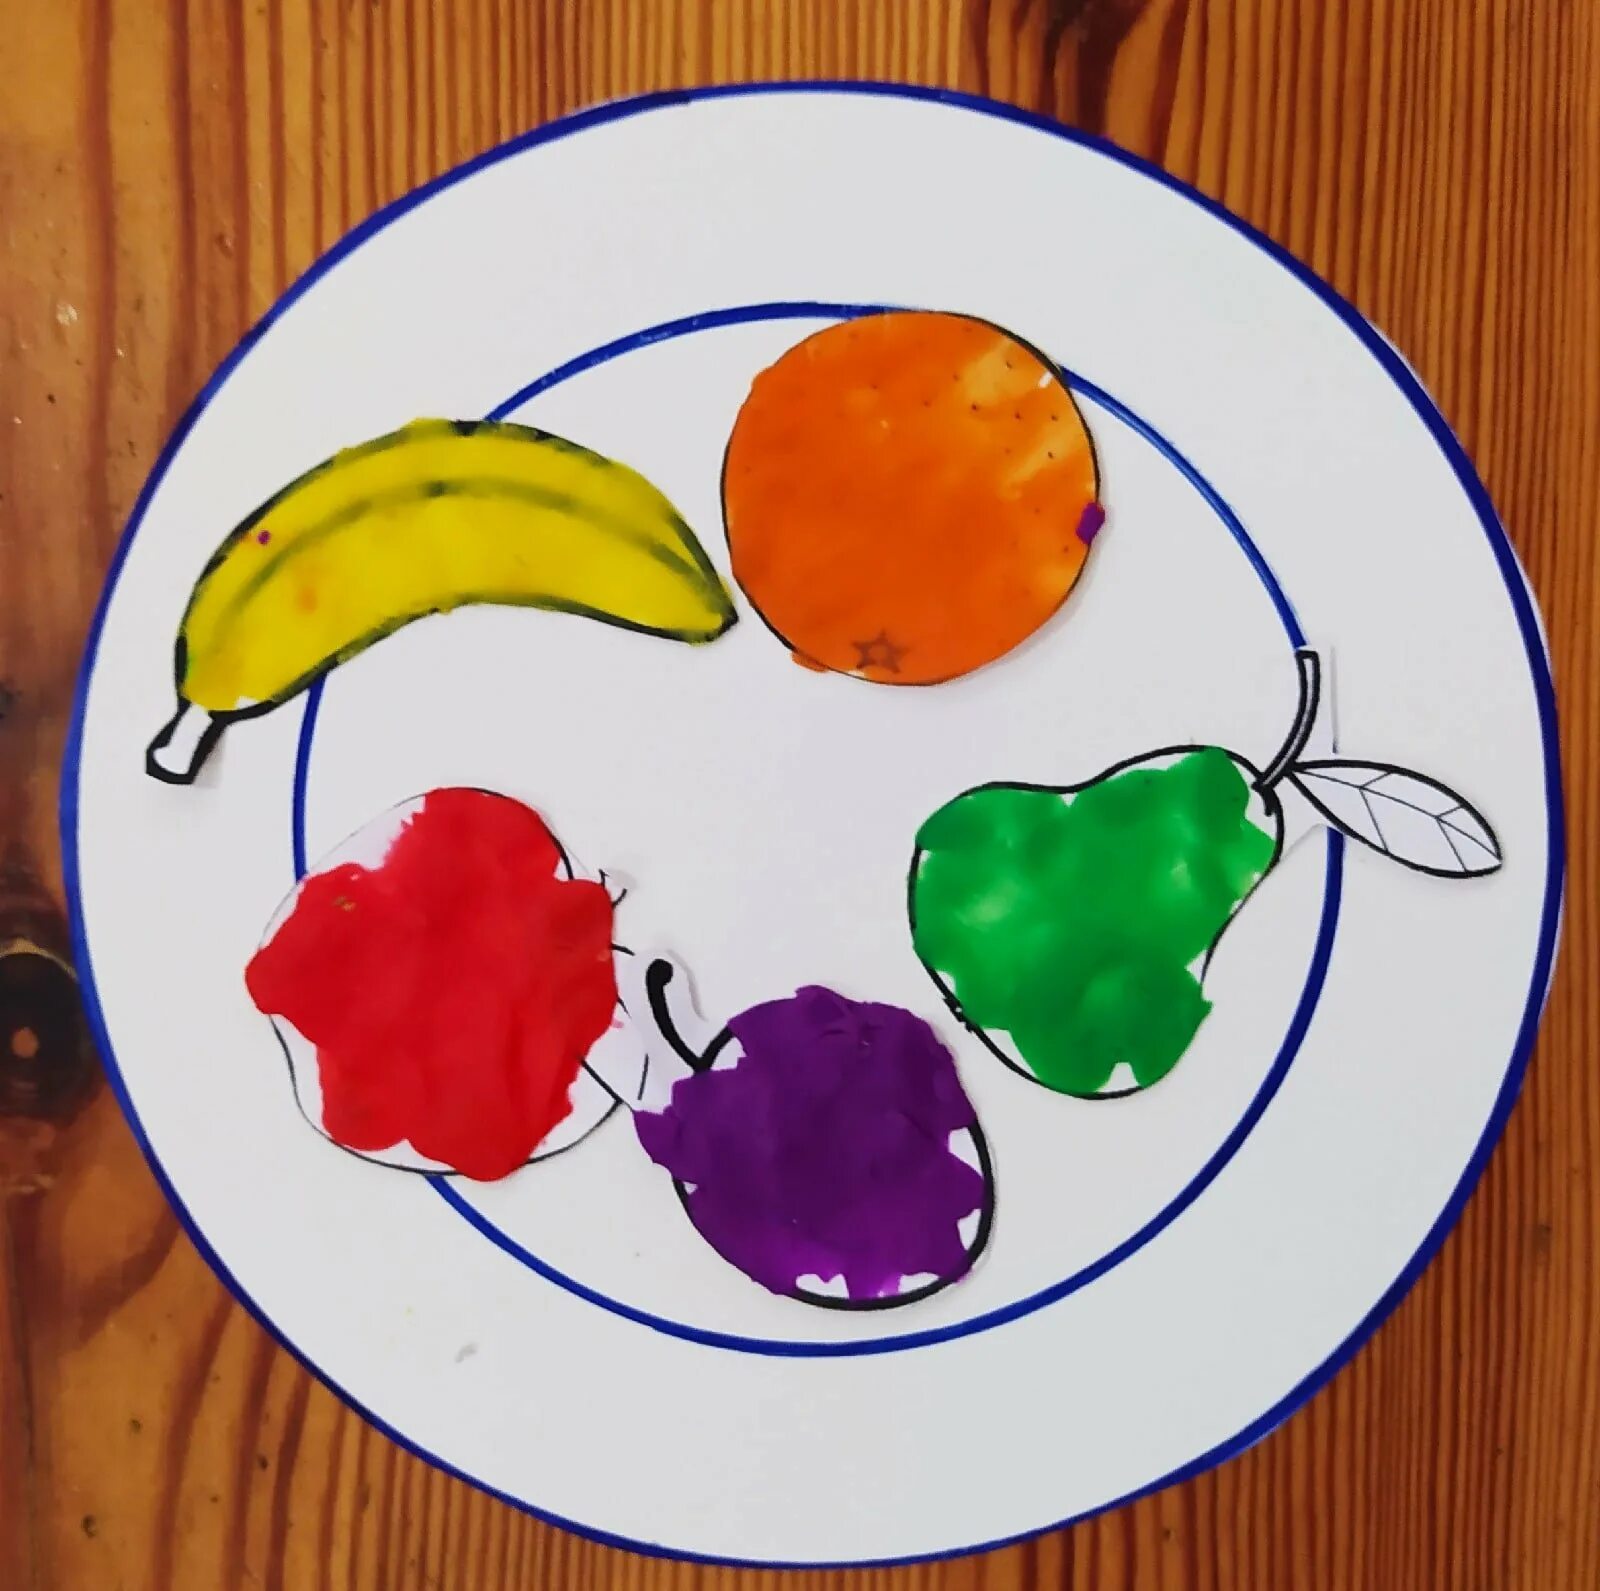 Аппликация фрукты на тарелке. Аппликация овощей и фруктов. Аппликация фрукты средняя группа. Рисование в средней группе фрукты на тарелочке.